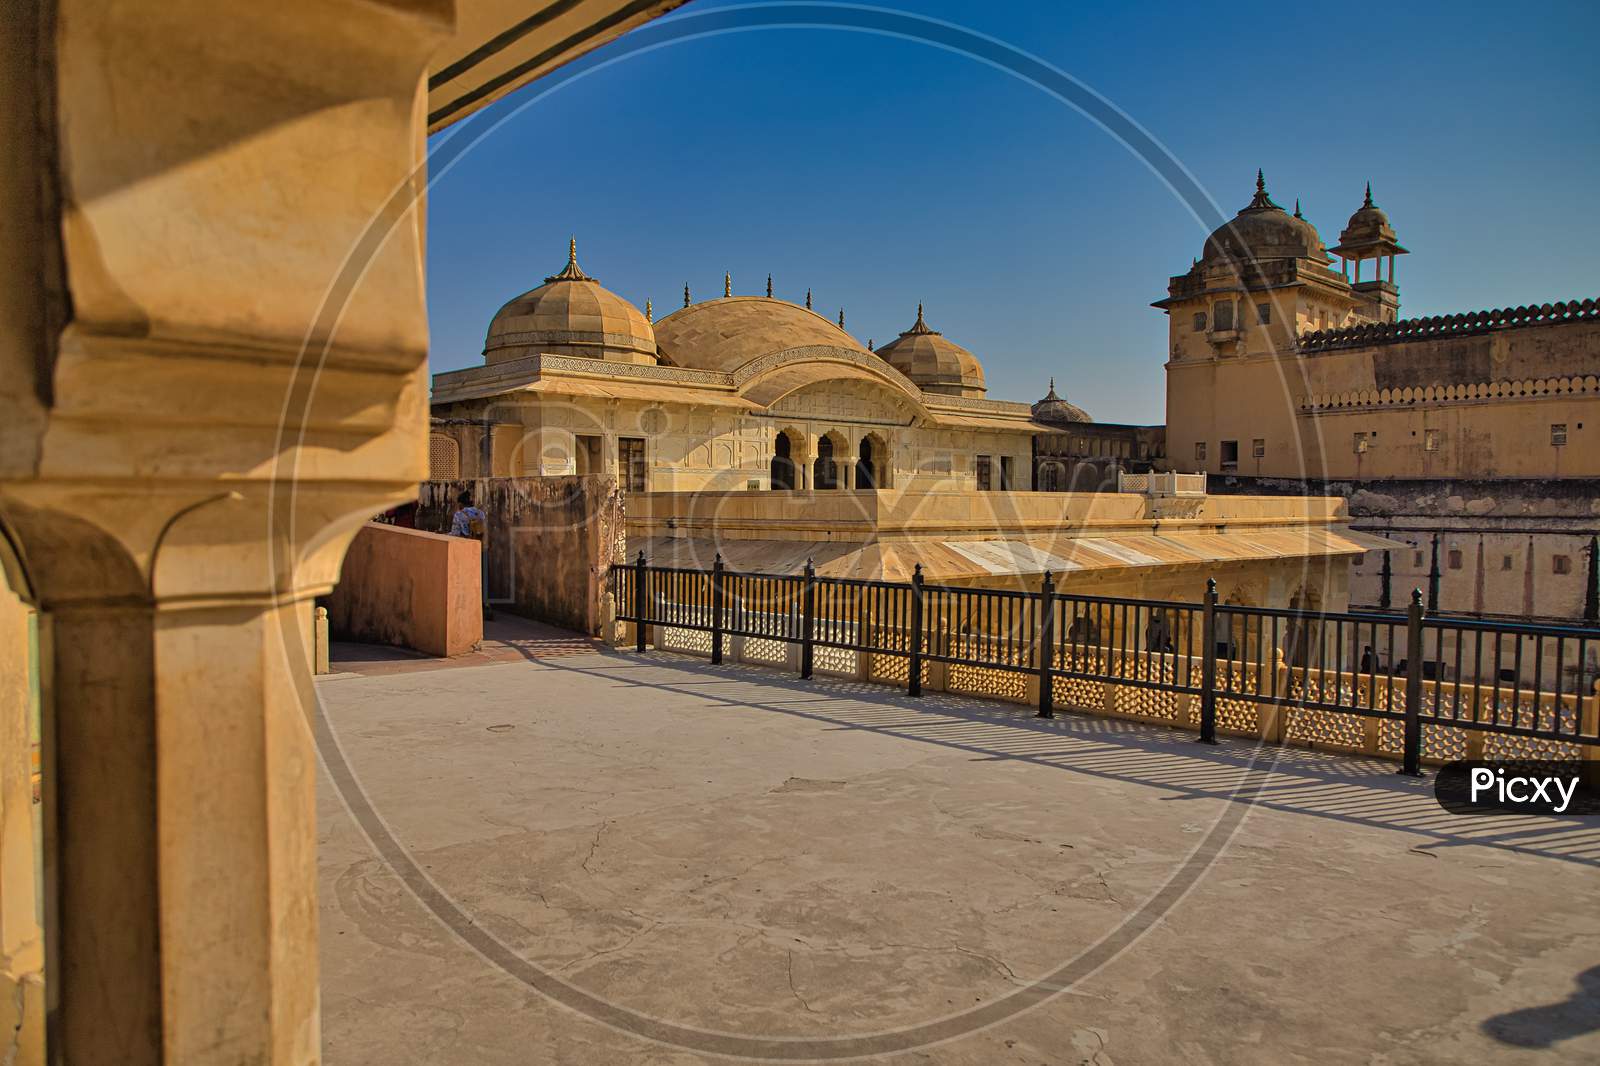 Amer fort, Jaipur, Rajasthan